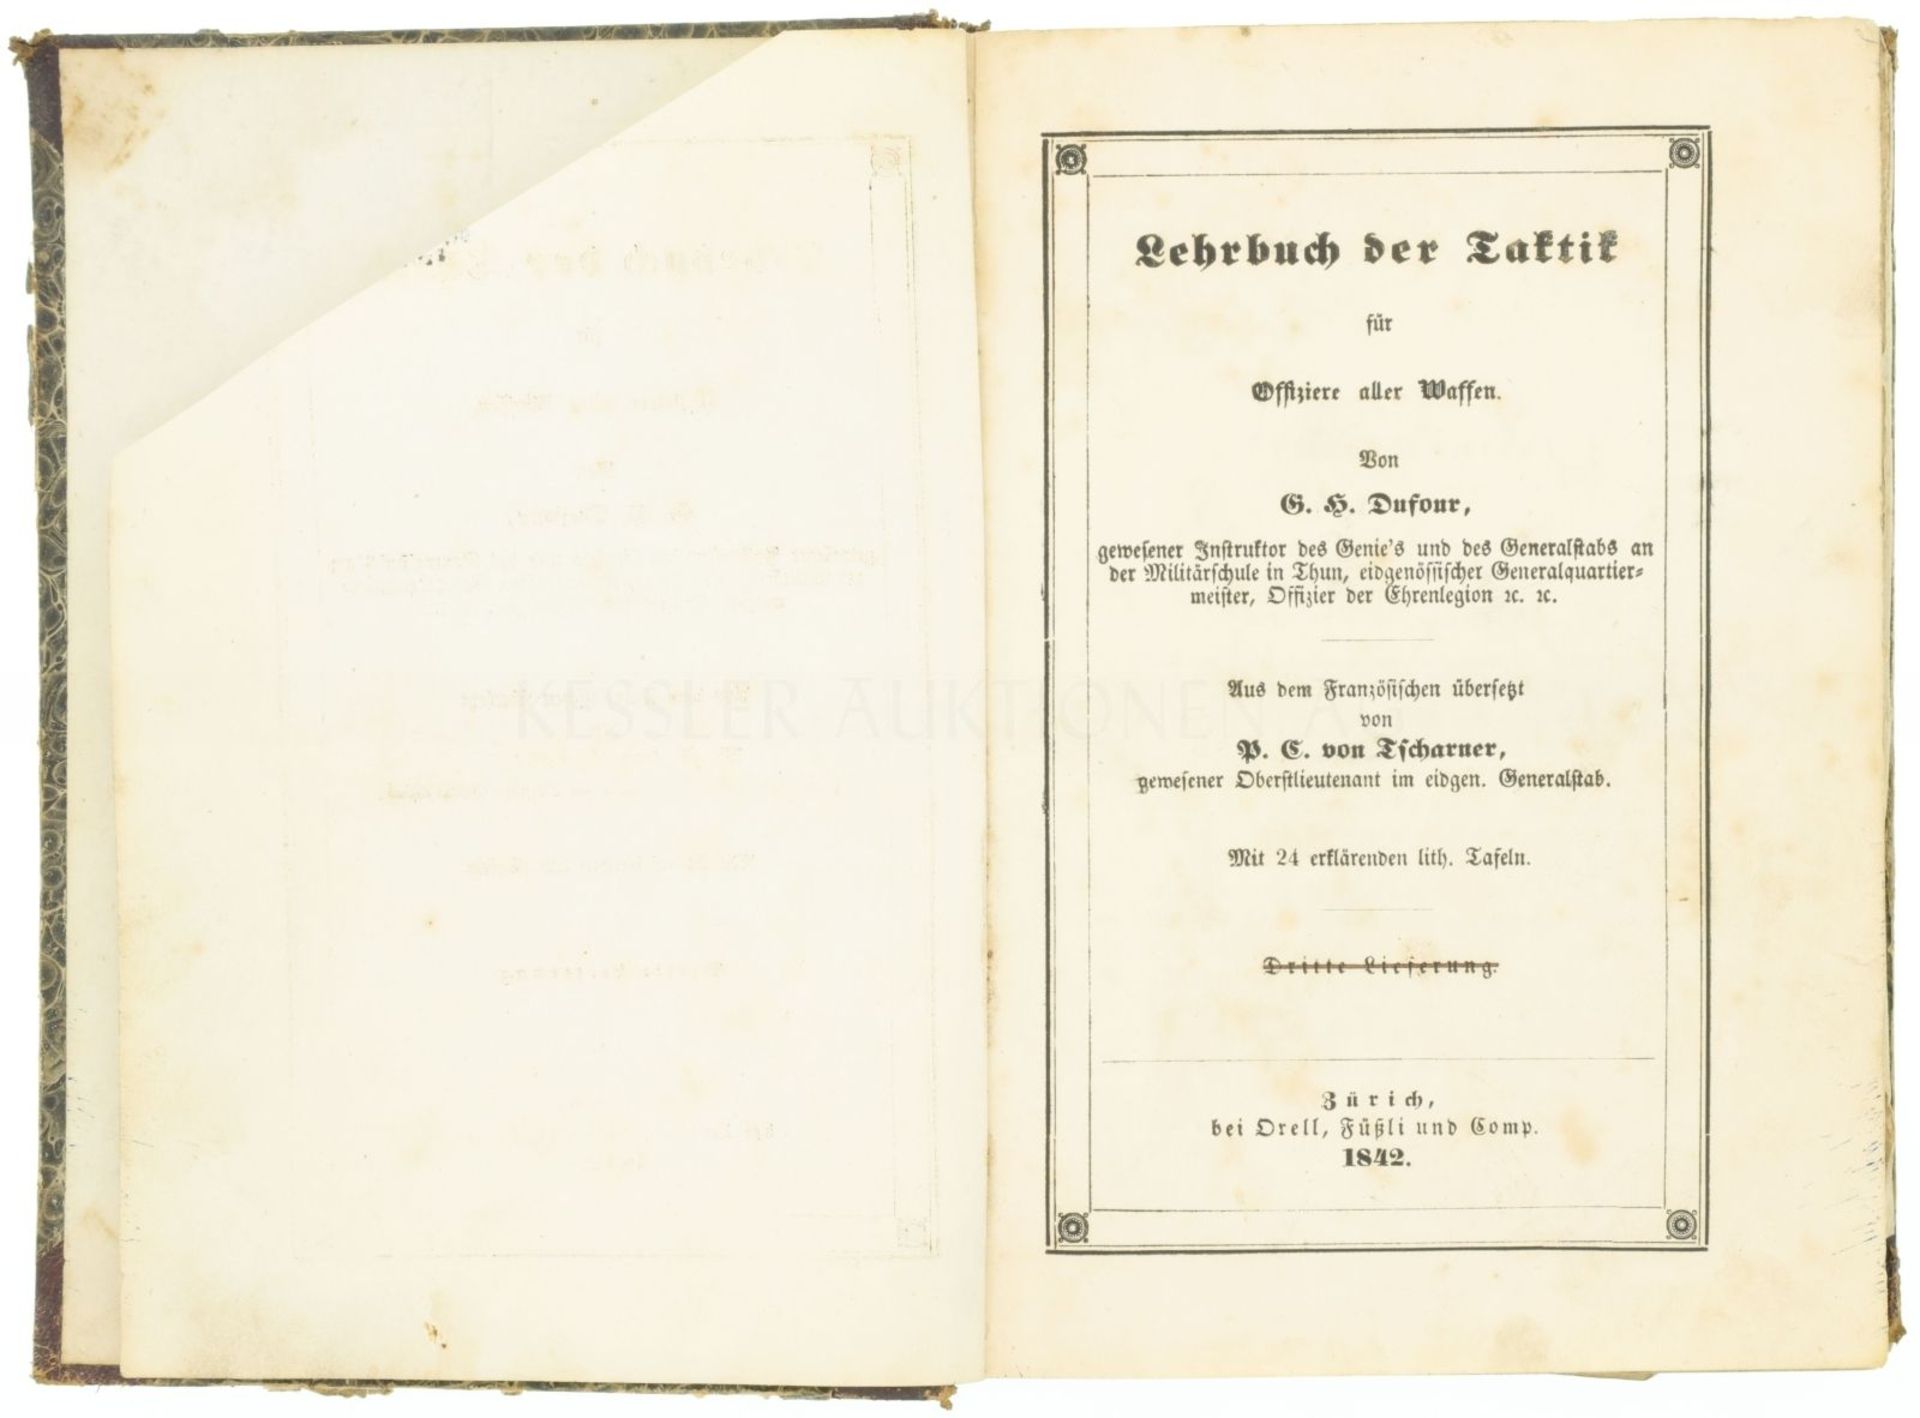 Lehrbuch der Taktik für Offiziere aller Waffen, G.H.Dufour, Verlag orell Füssli 1842